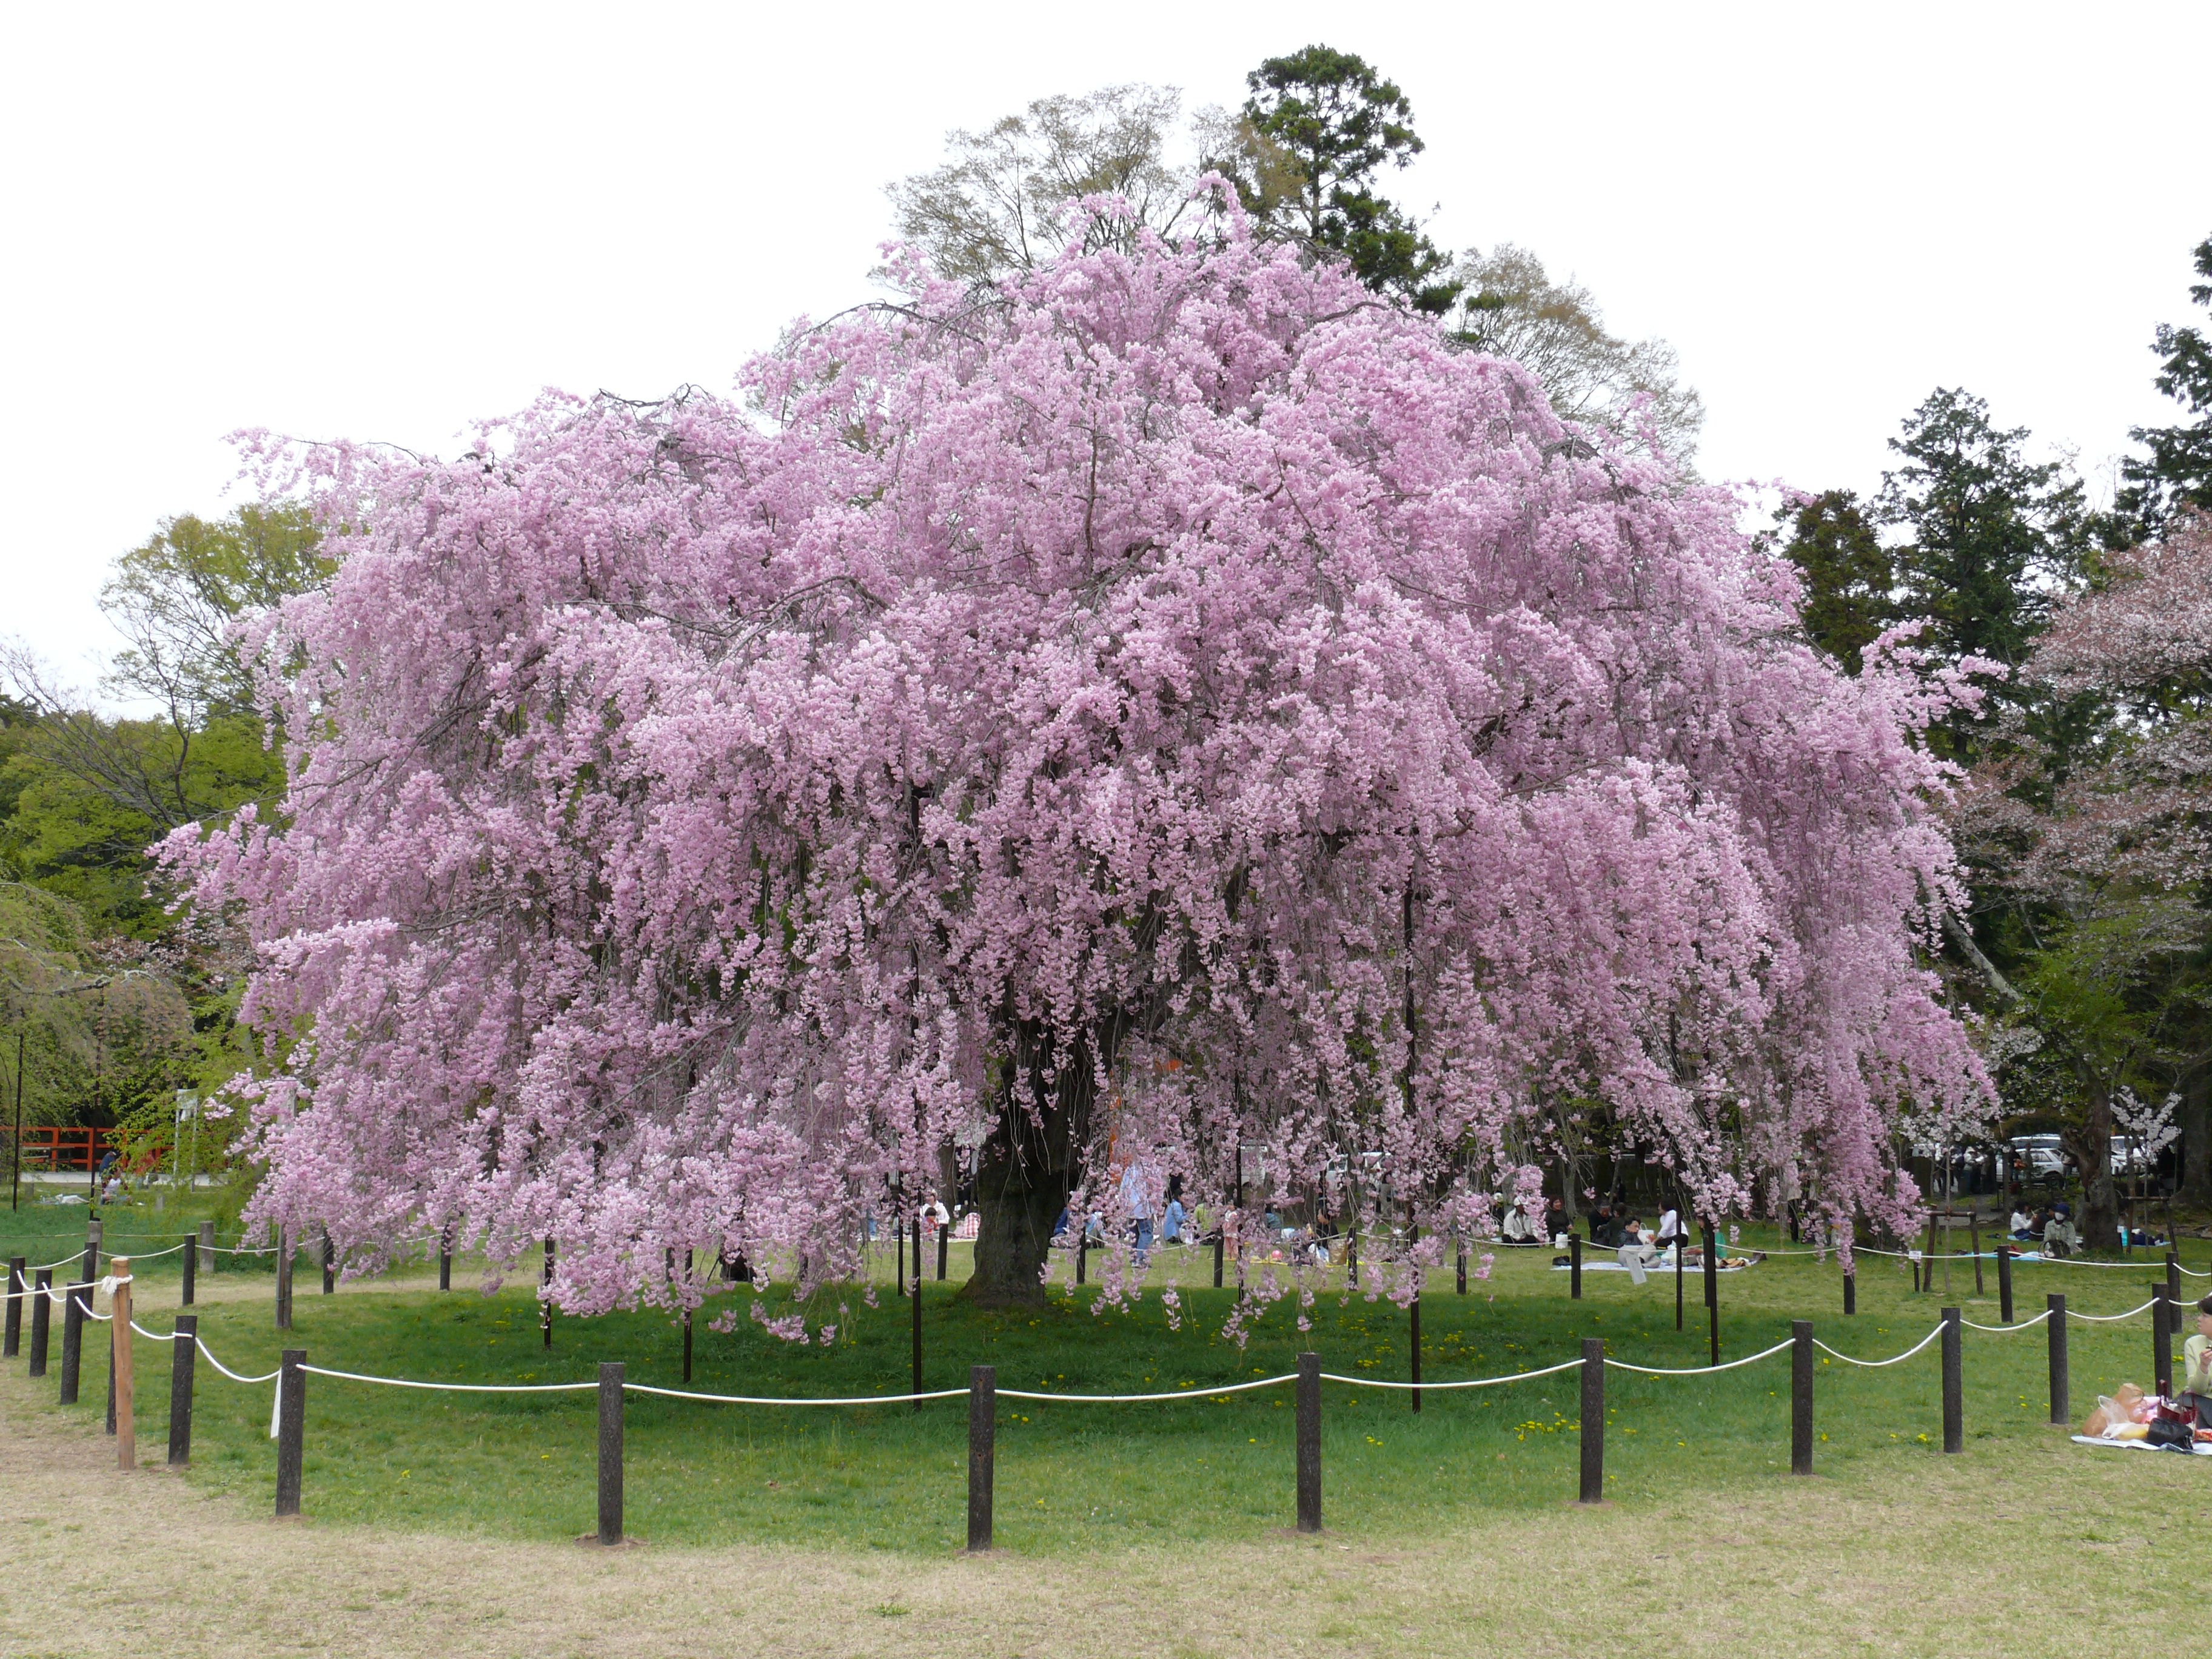 Flowering ornamental weeping cherry tree | Trees | Pinterest ...